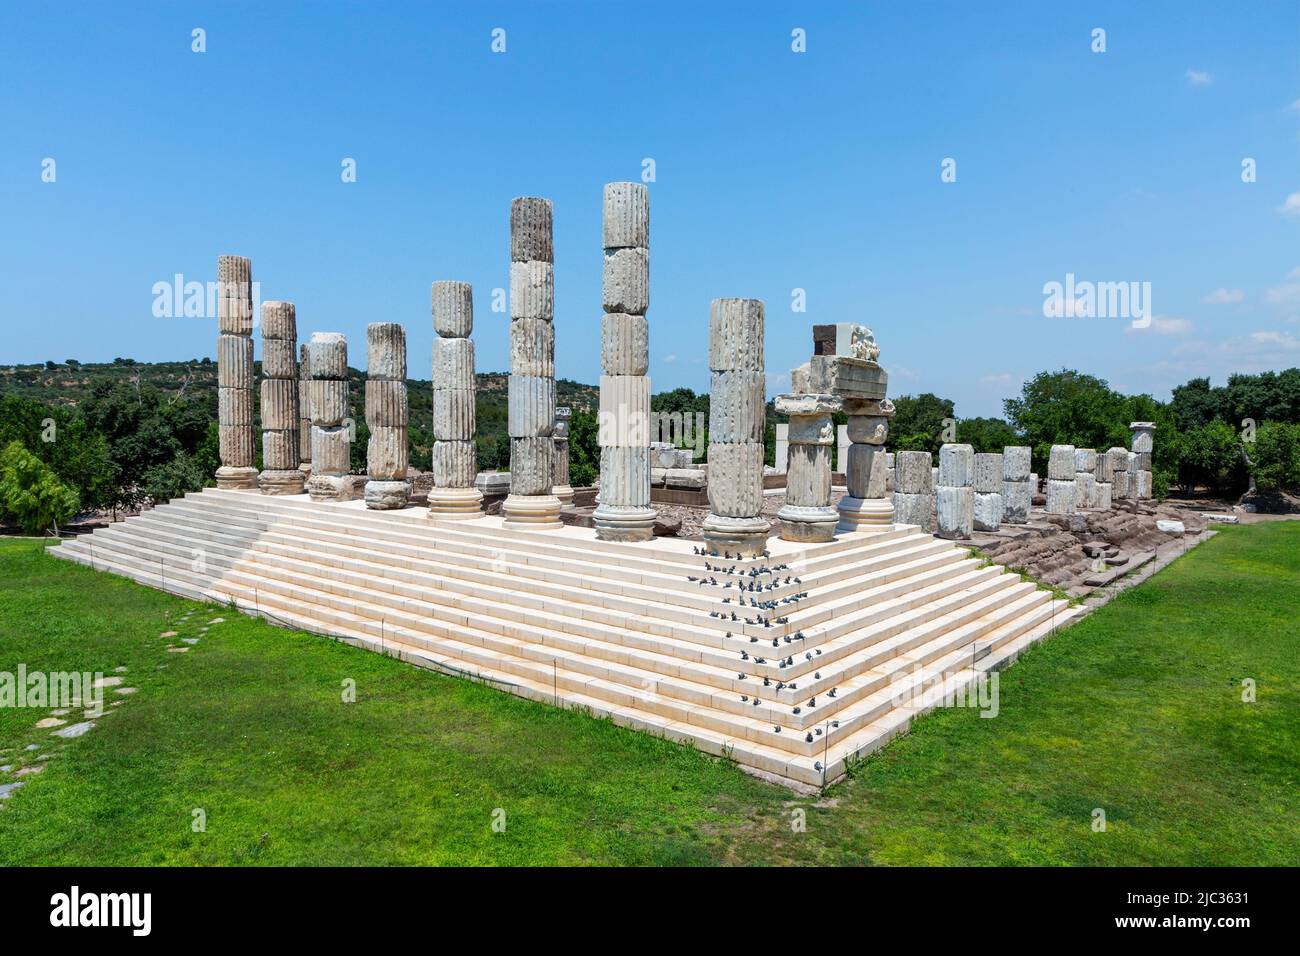 Ruinen des Heiligtums von Apollon Smintheus in Ayvacik, Türkei, die aus dem Wort sminthos stammen, was Mäuse bedeutet, als Apollo Mäuse tötete, die die Felder zerstörten. Stockfoto